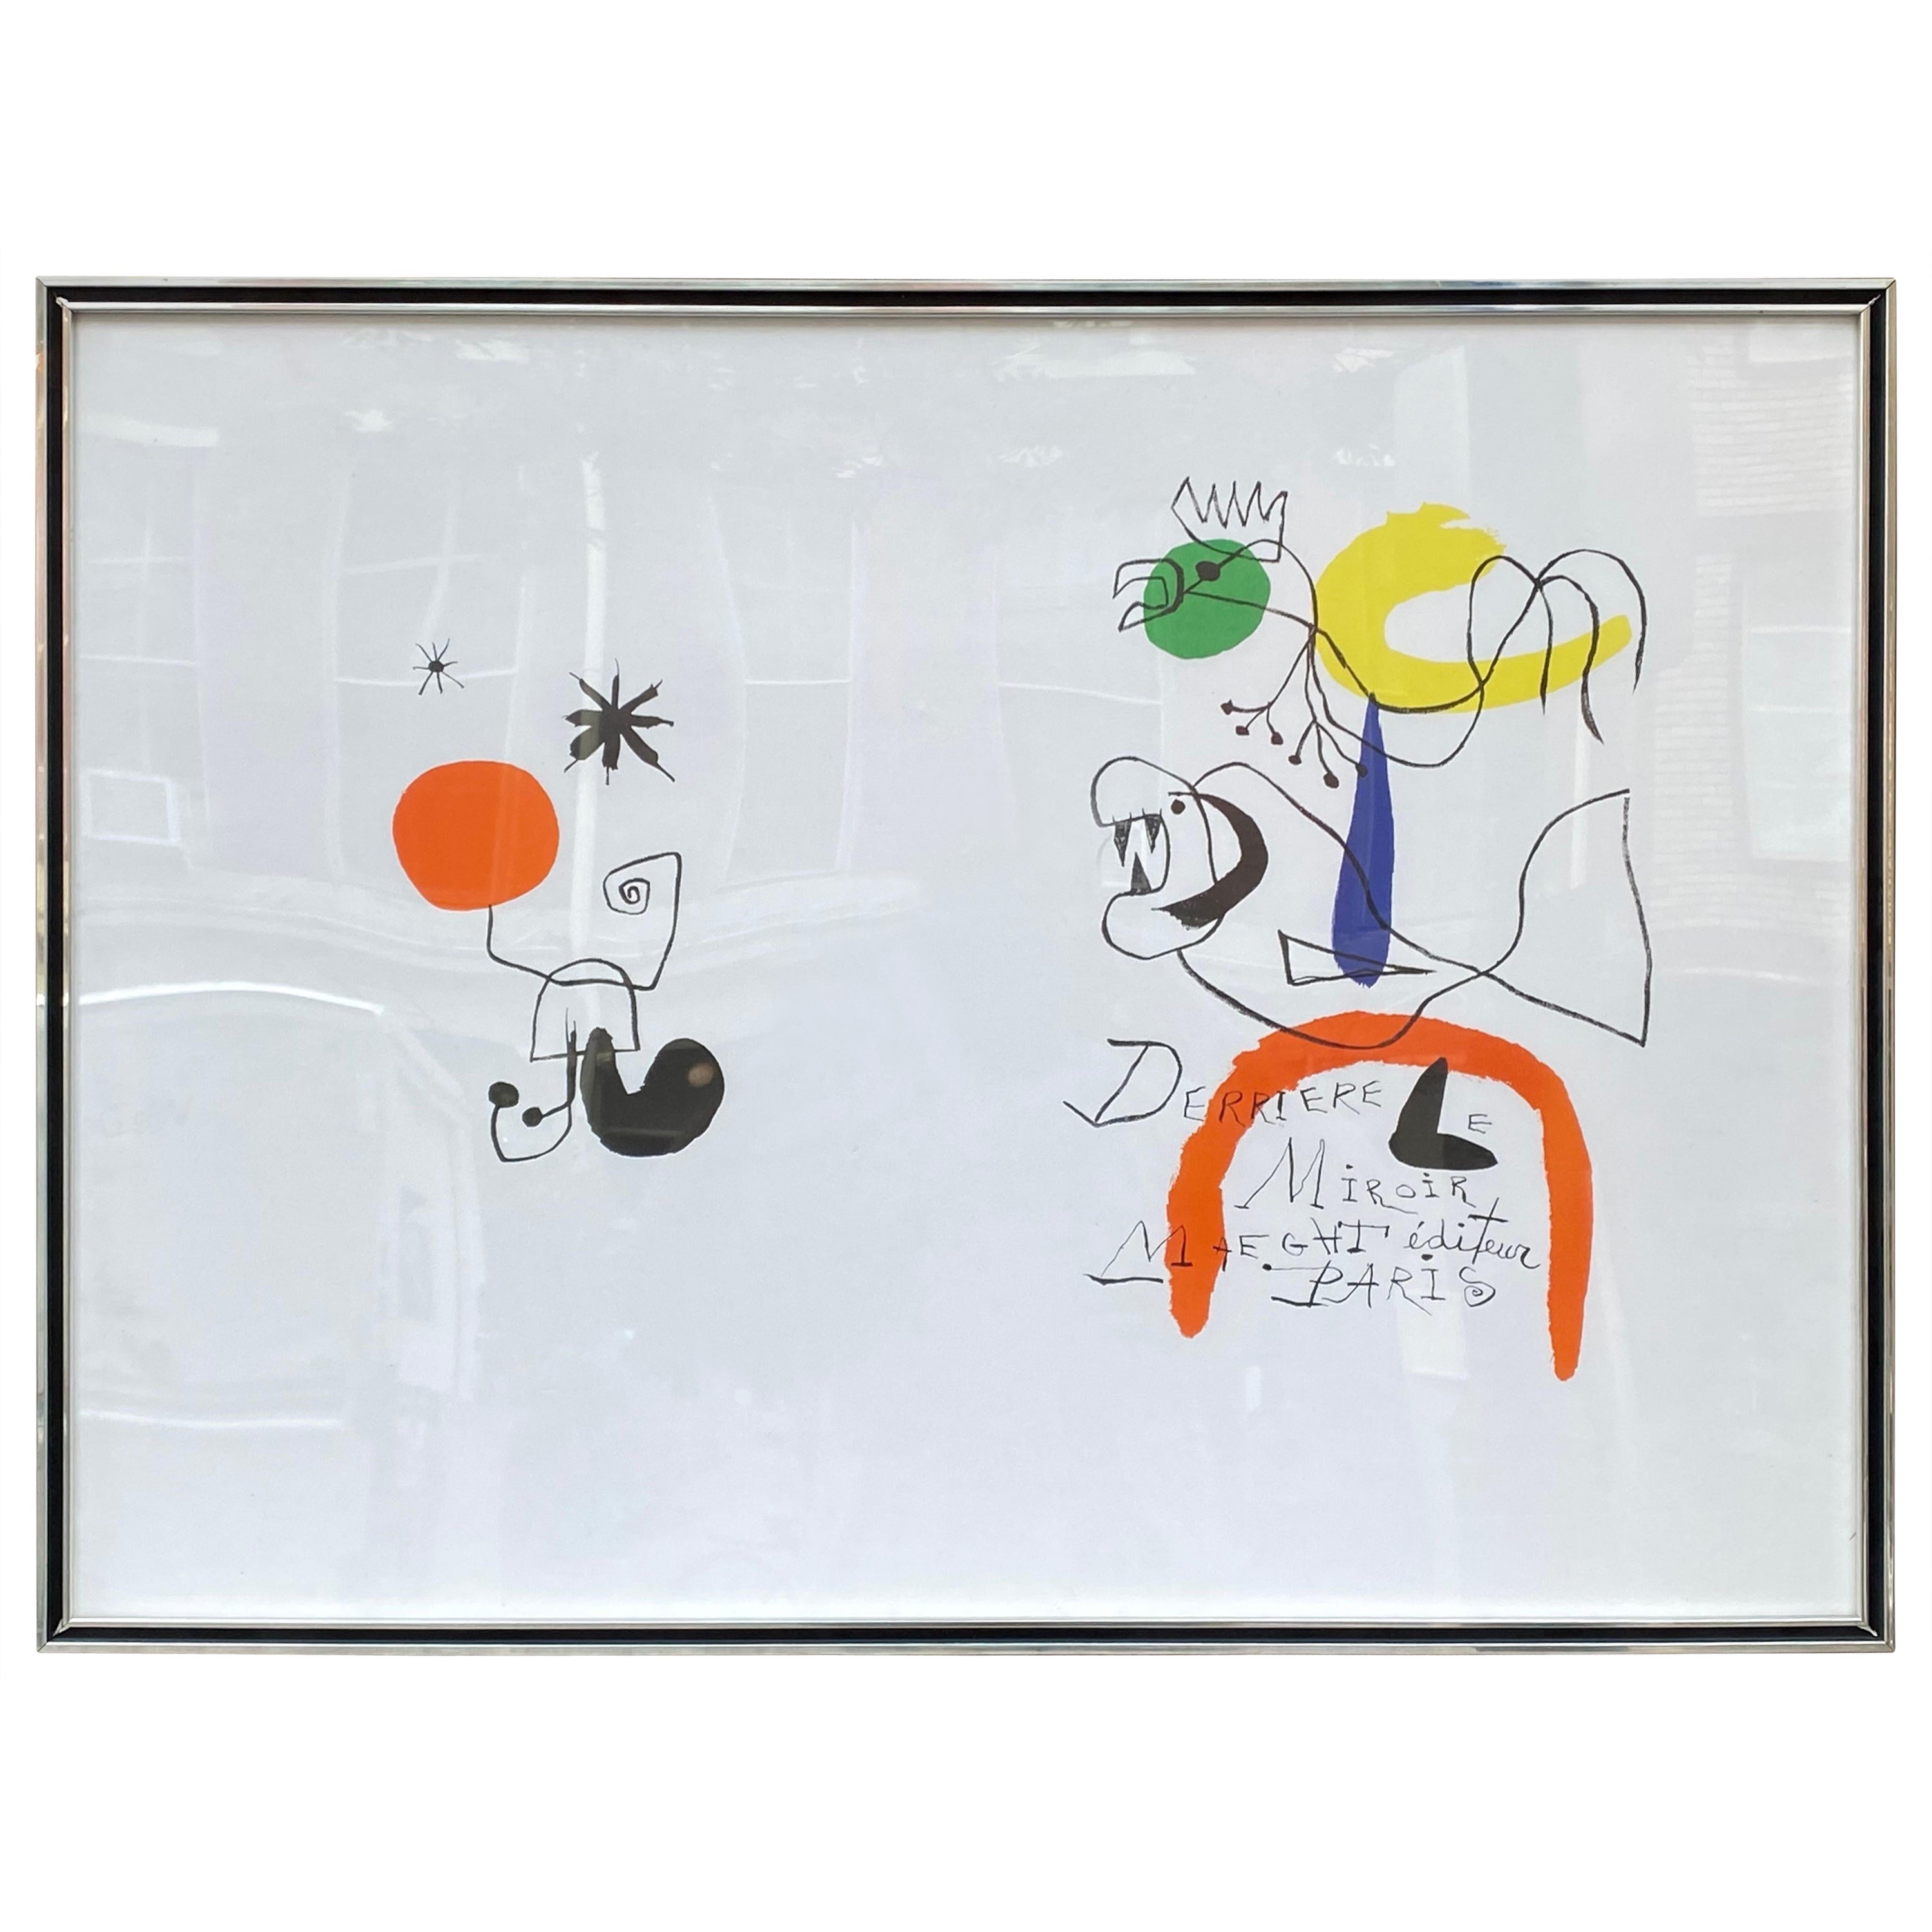 Affiche d'exposition « Derrieve Le Miroir » de Joan Miro